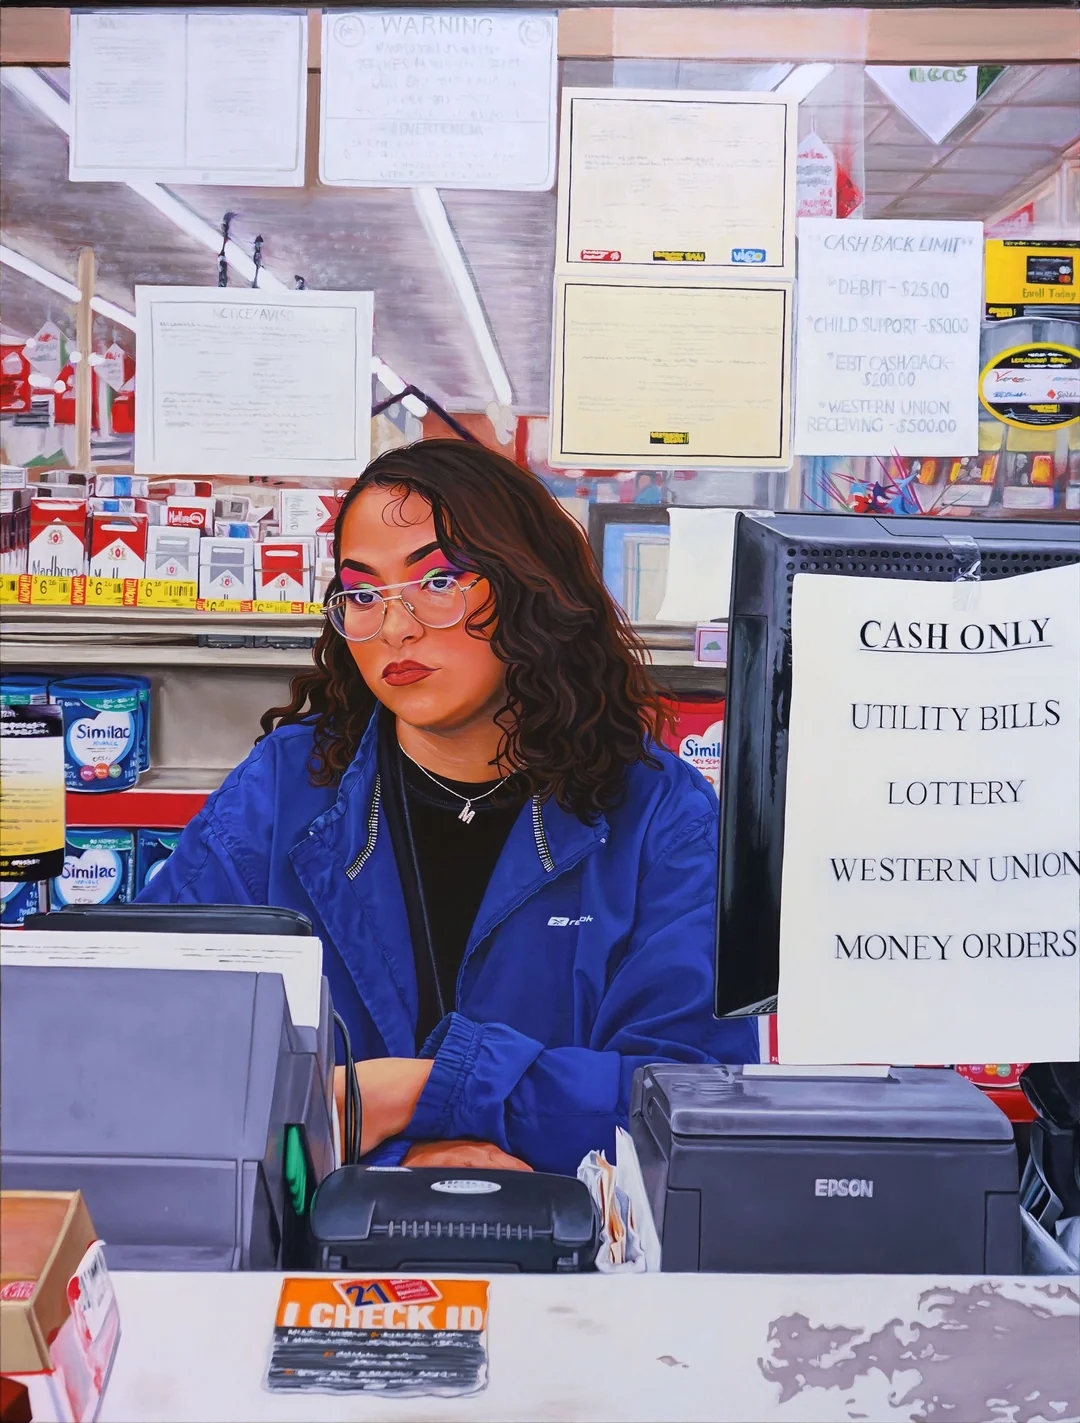 Customer Service Representative - Oil on Canvas (2020) by Marianna Olague